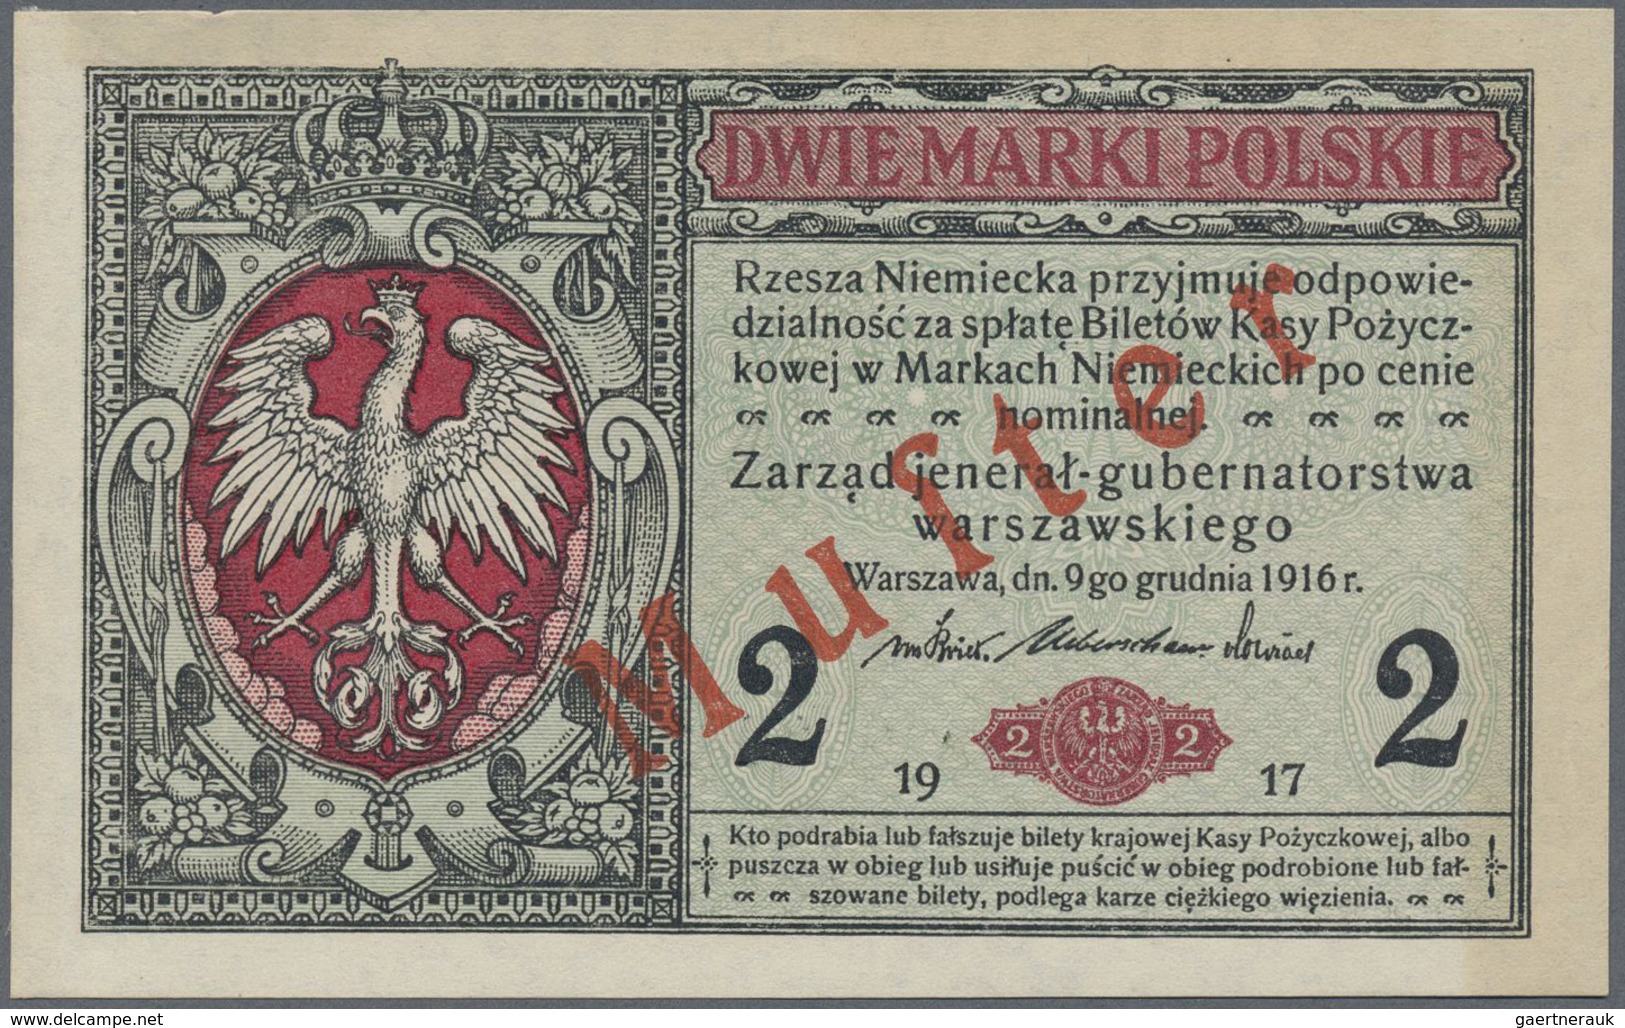 Poland / Polen: 2 Marki Polskie 1917 SPECIMEN, P.3s, Previously Mounted, Otherwise Perfect. Conditio - Poland